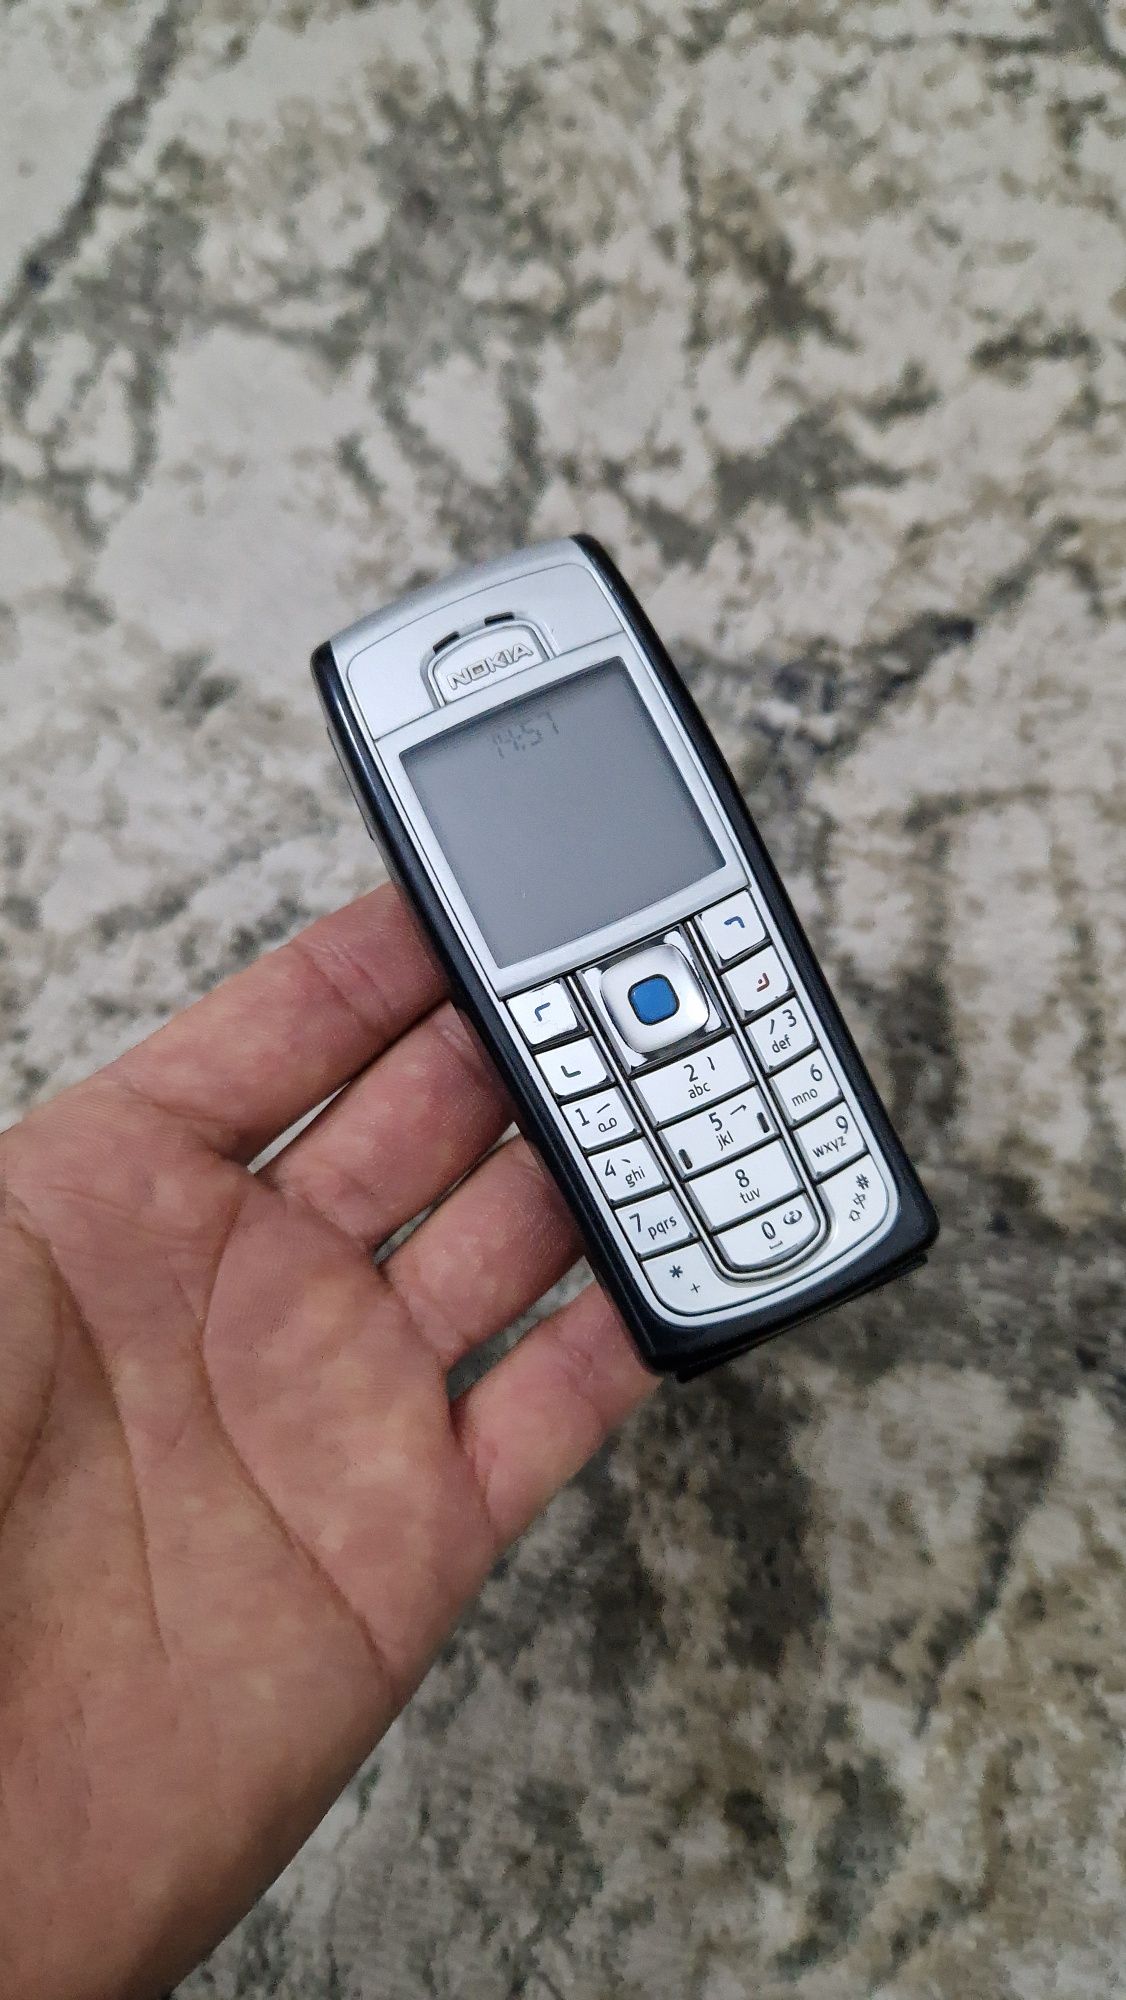 Nokia 6230i retro